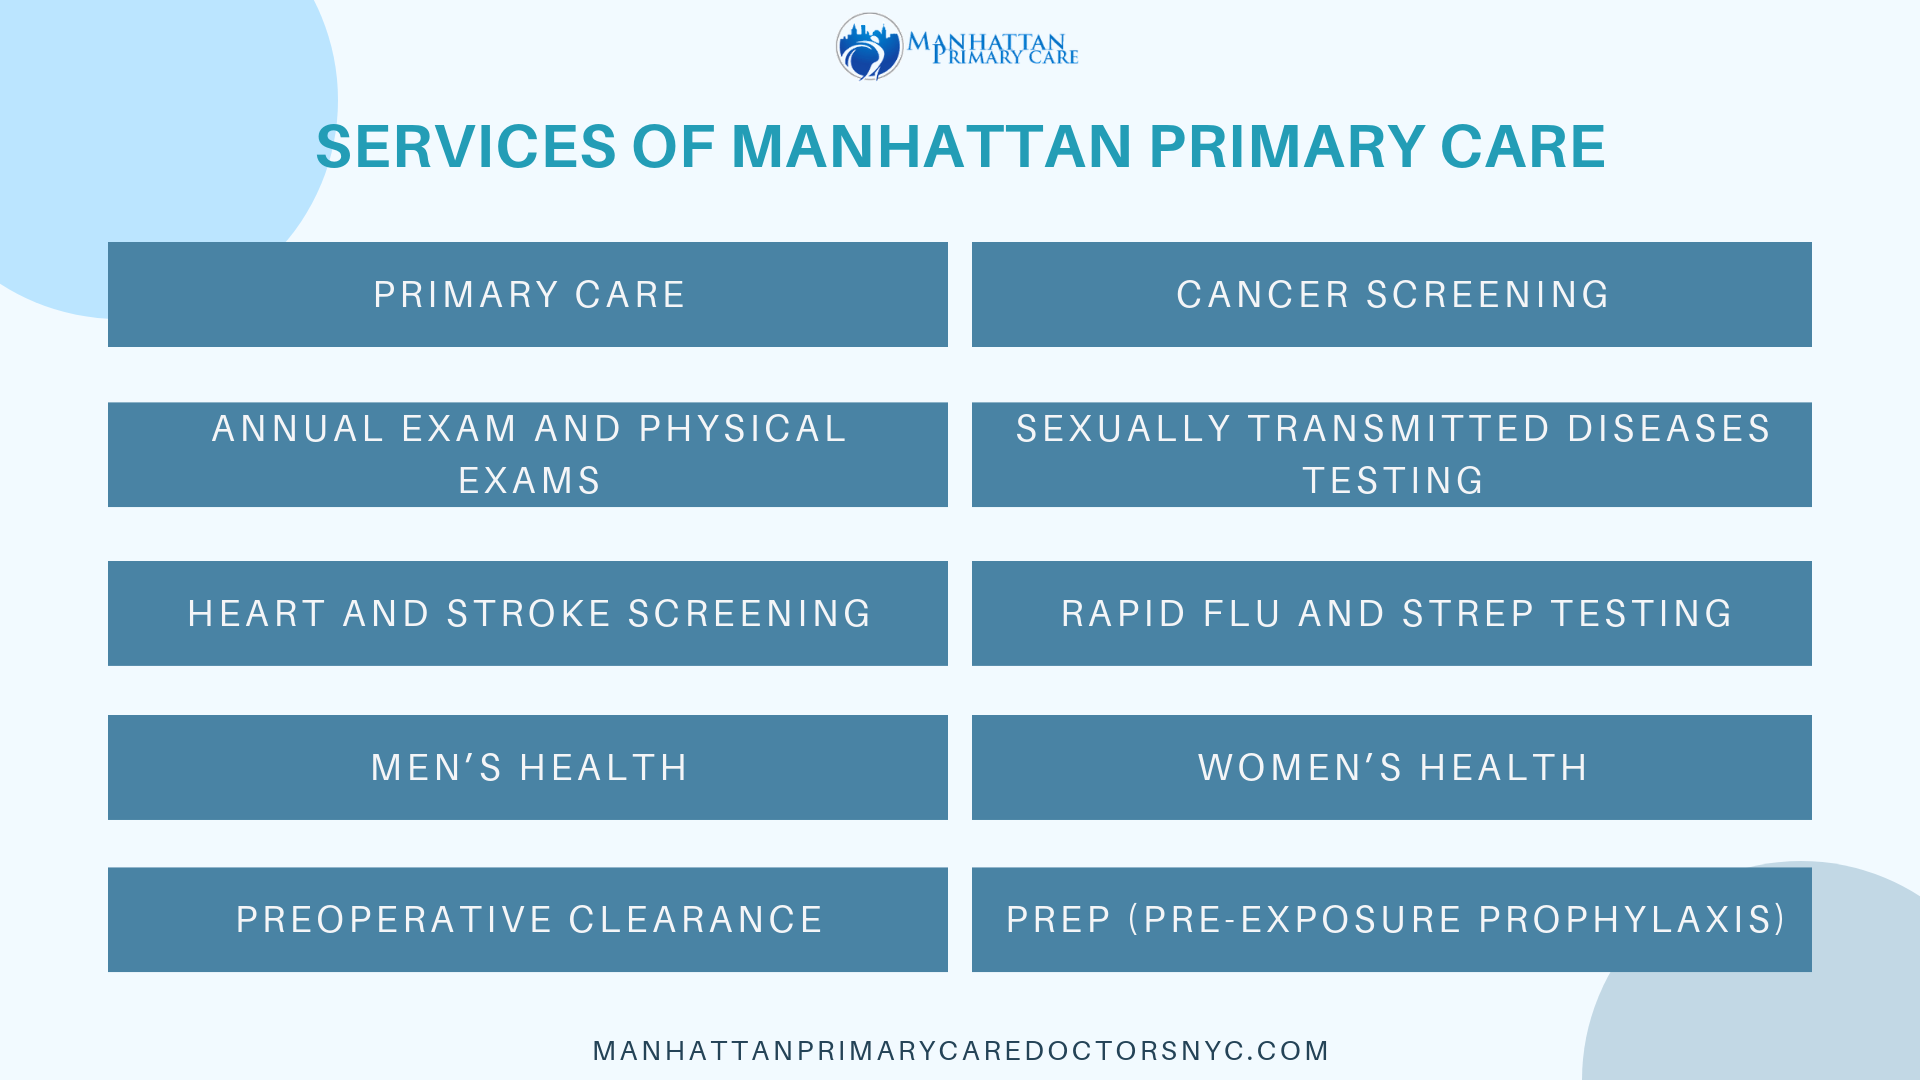 Manhattan Primary Care